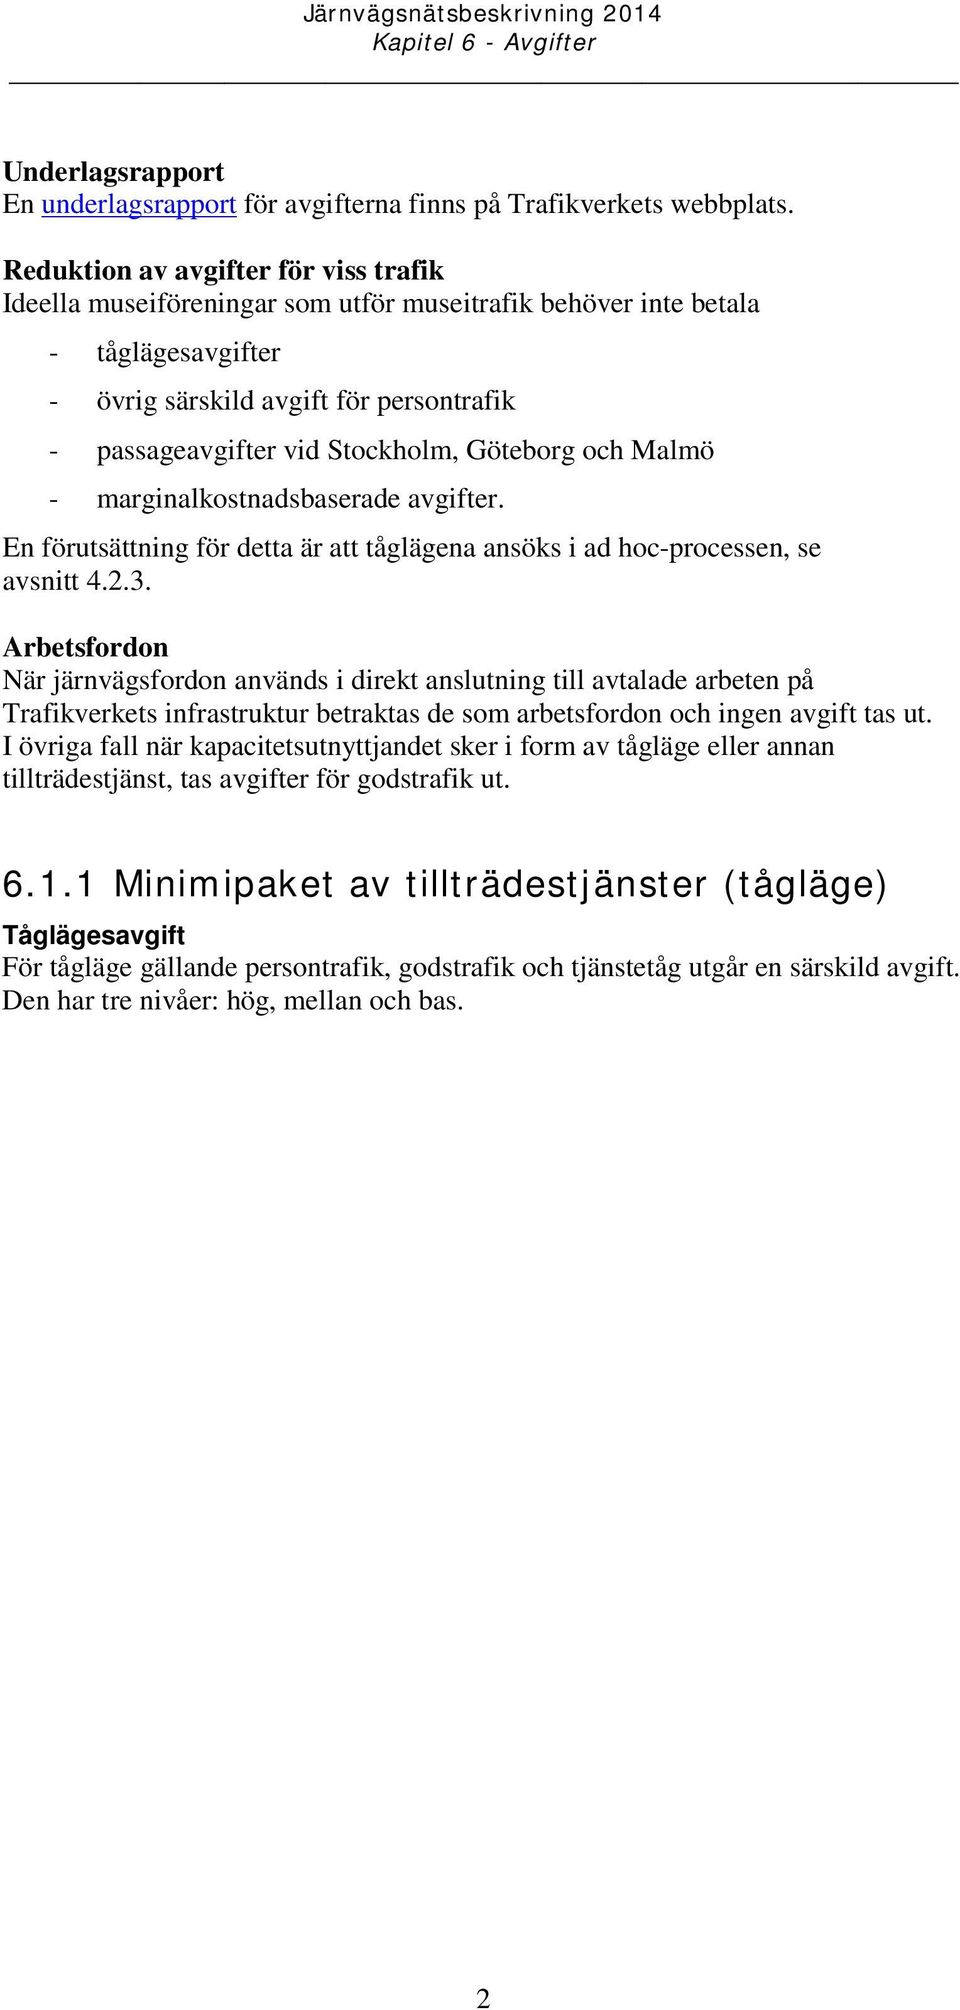 Göteborg och Malmö - marginalkostnadsbaserade avgifter. En förutsättning för detta är att tåglägena ansöks i ad hoc-processen, se avsnitt 4.2.3.